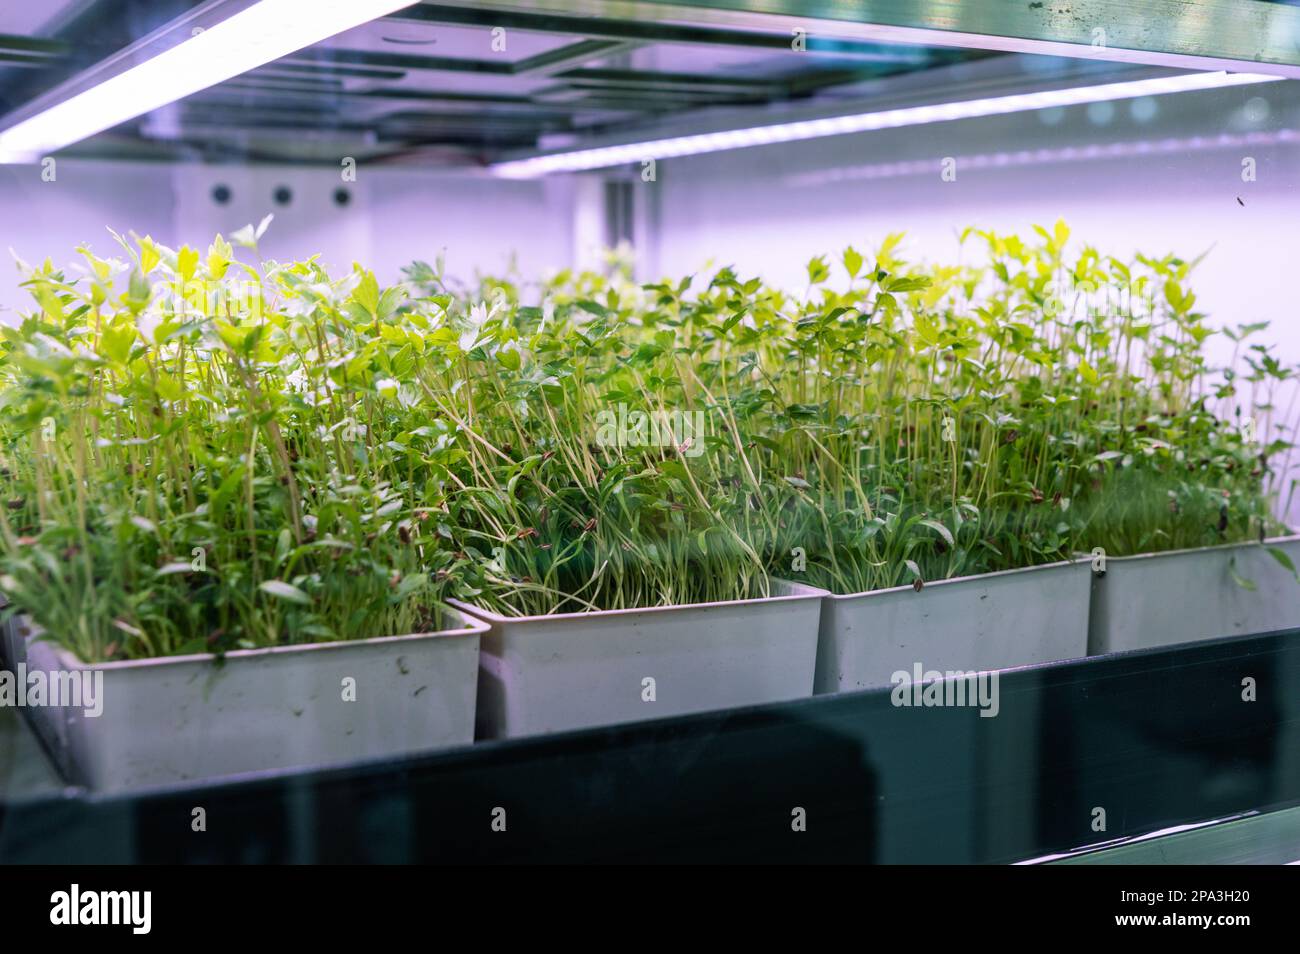 Pousses et culture d'herbes sous les lumières de croissance Banque D'Images